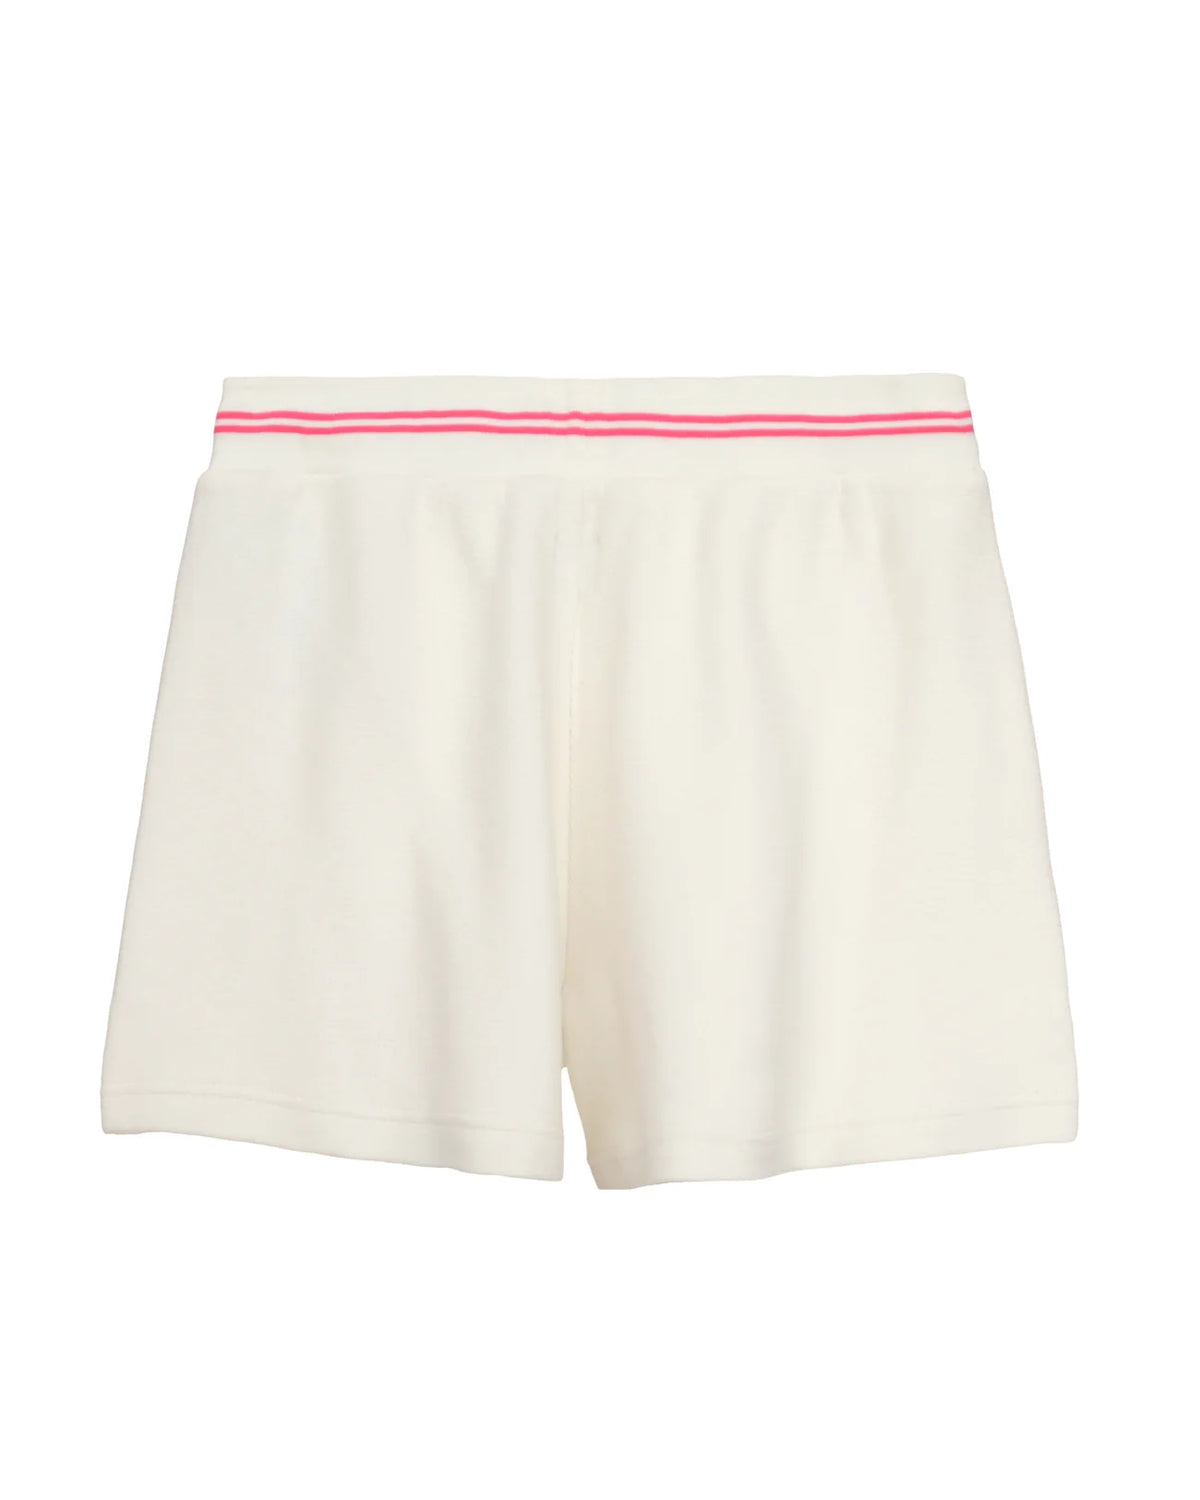 Pink Cherub University Shorts